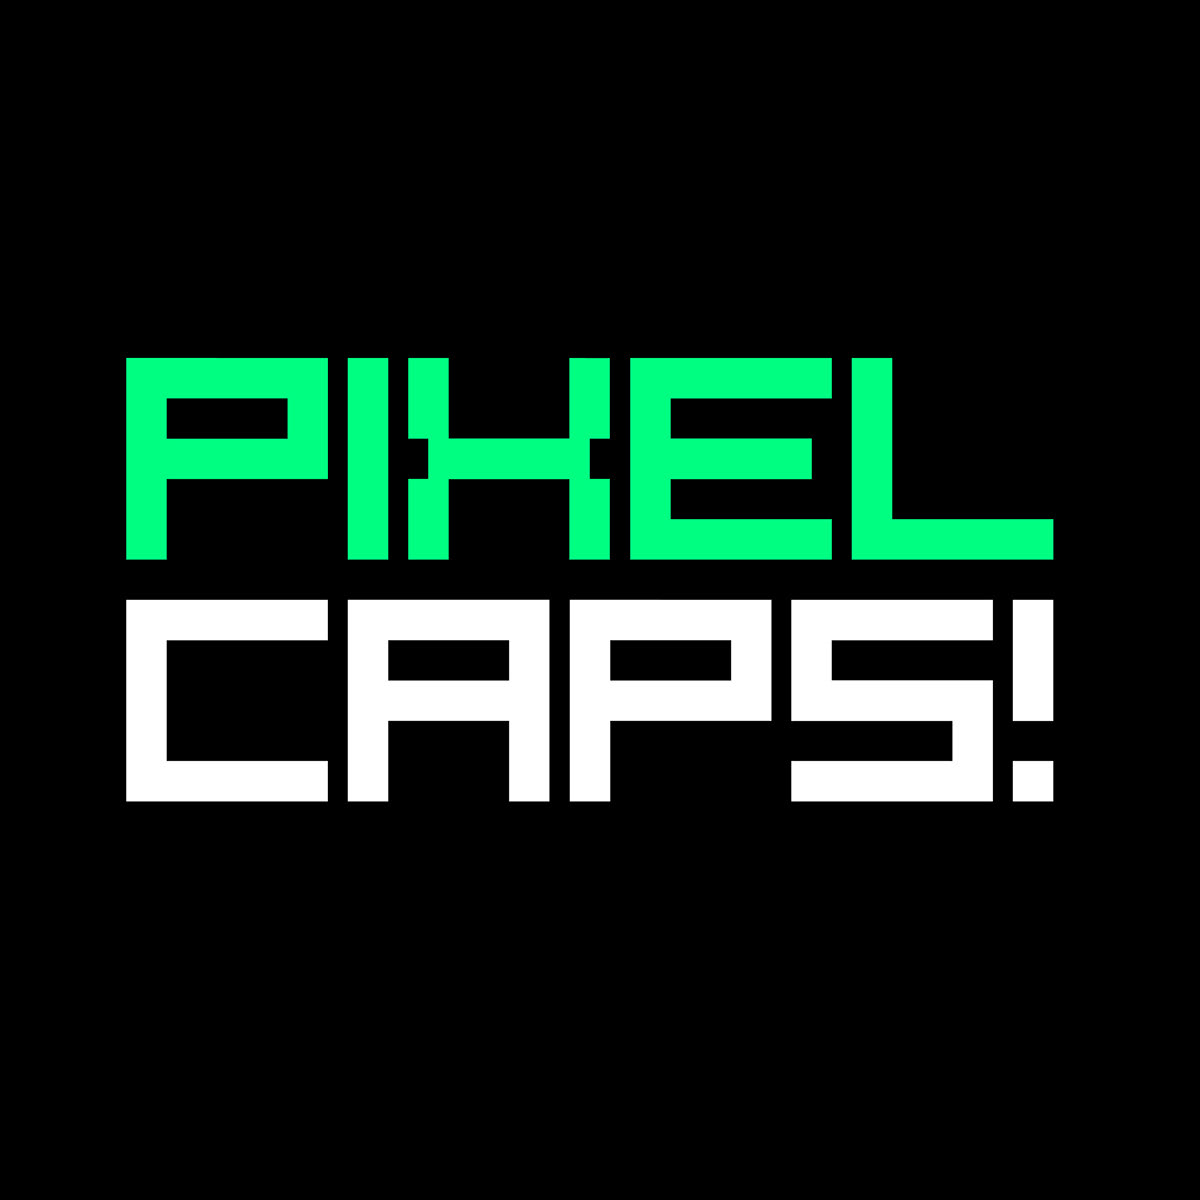 像素英文字体 PixelCaps! Font